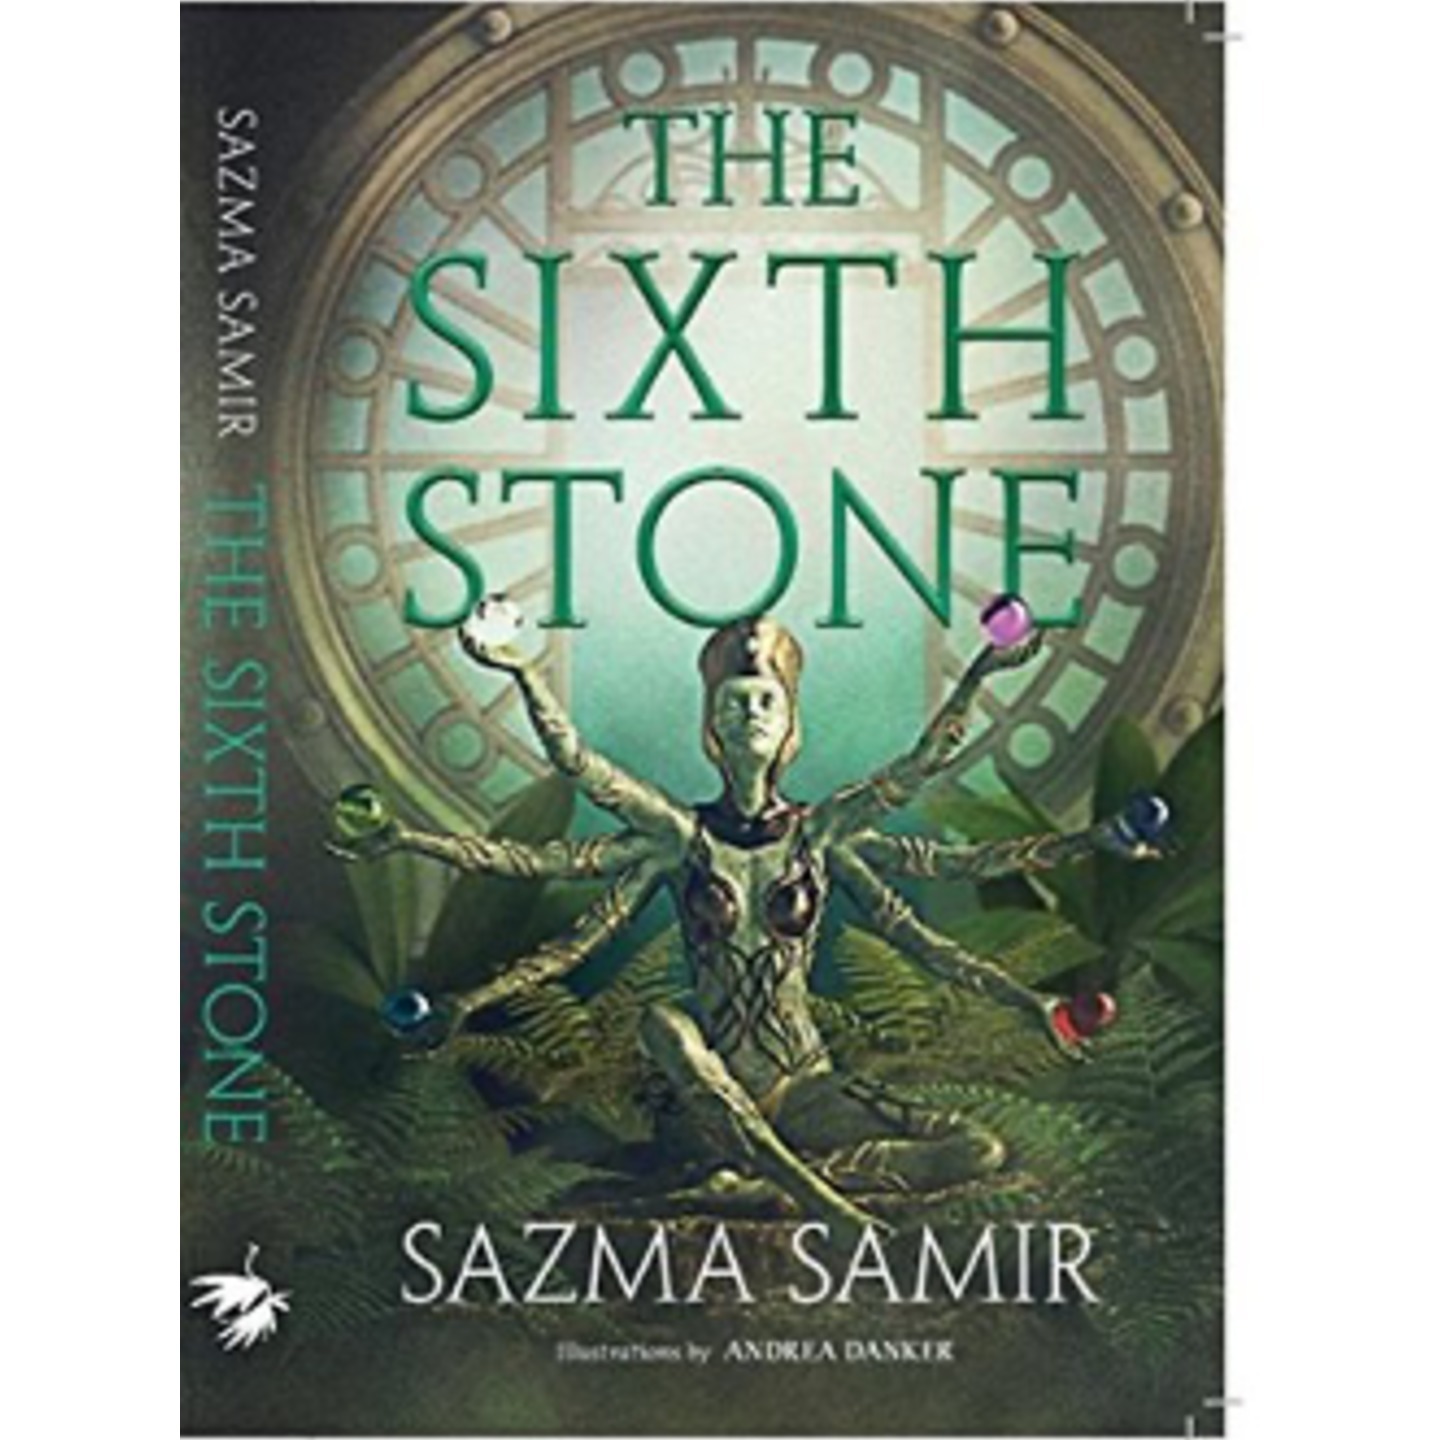 The Sixth Stone by Sazma Samir